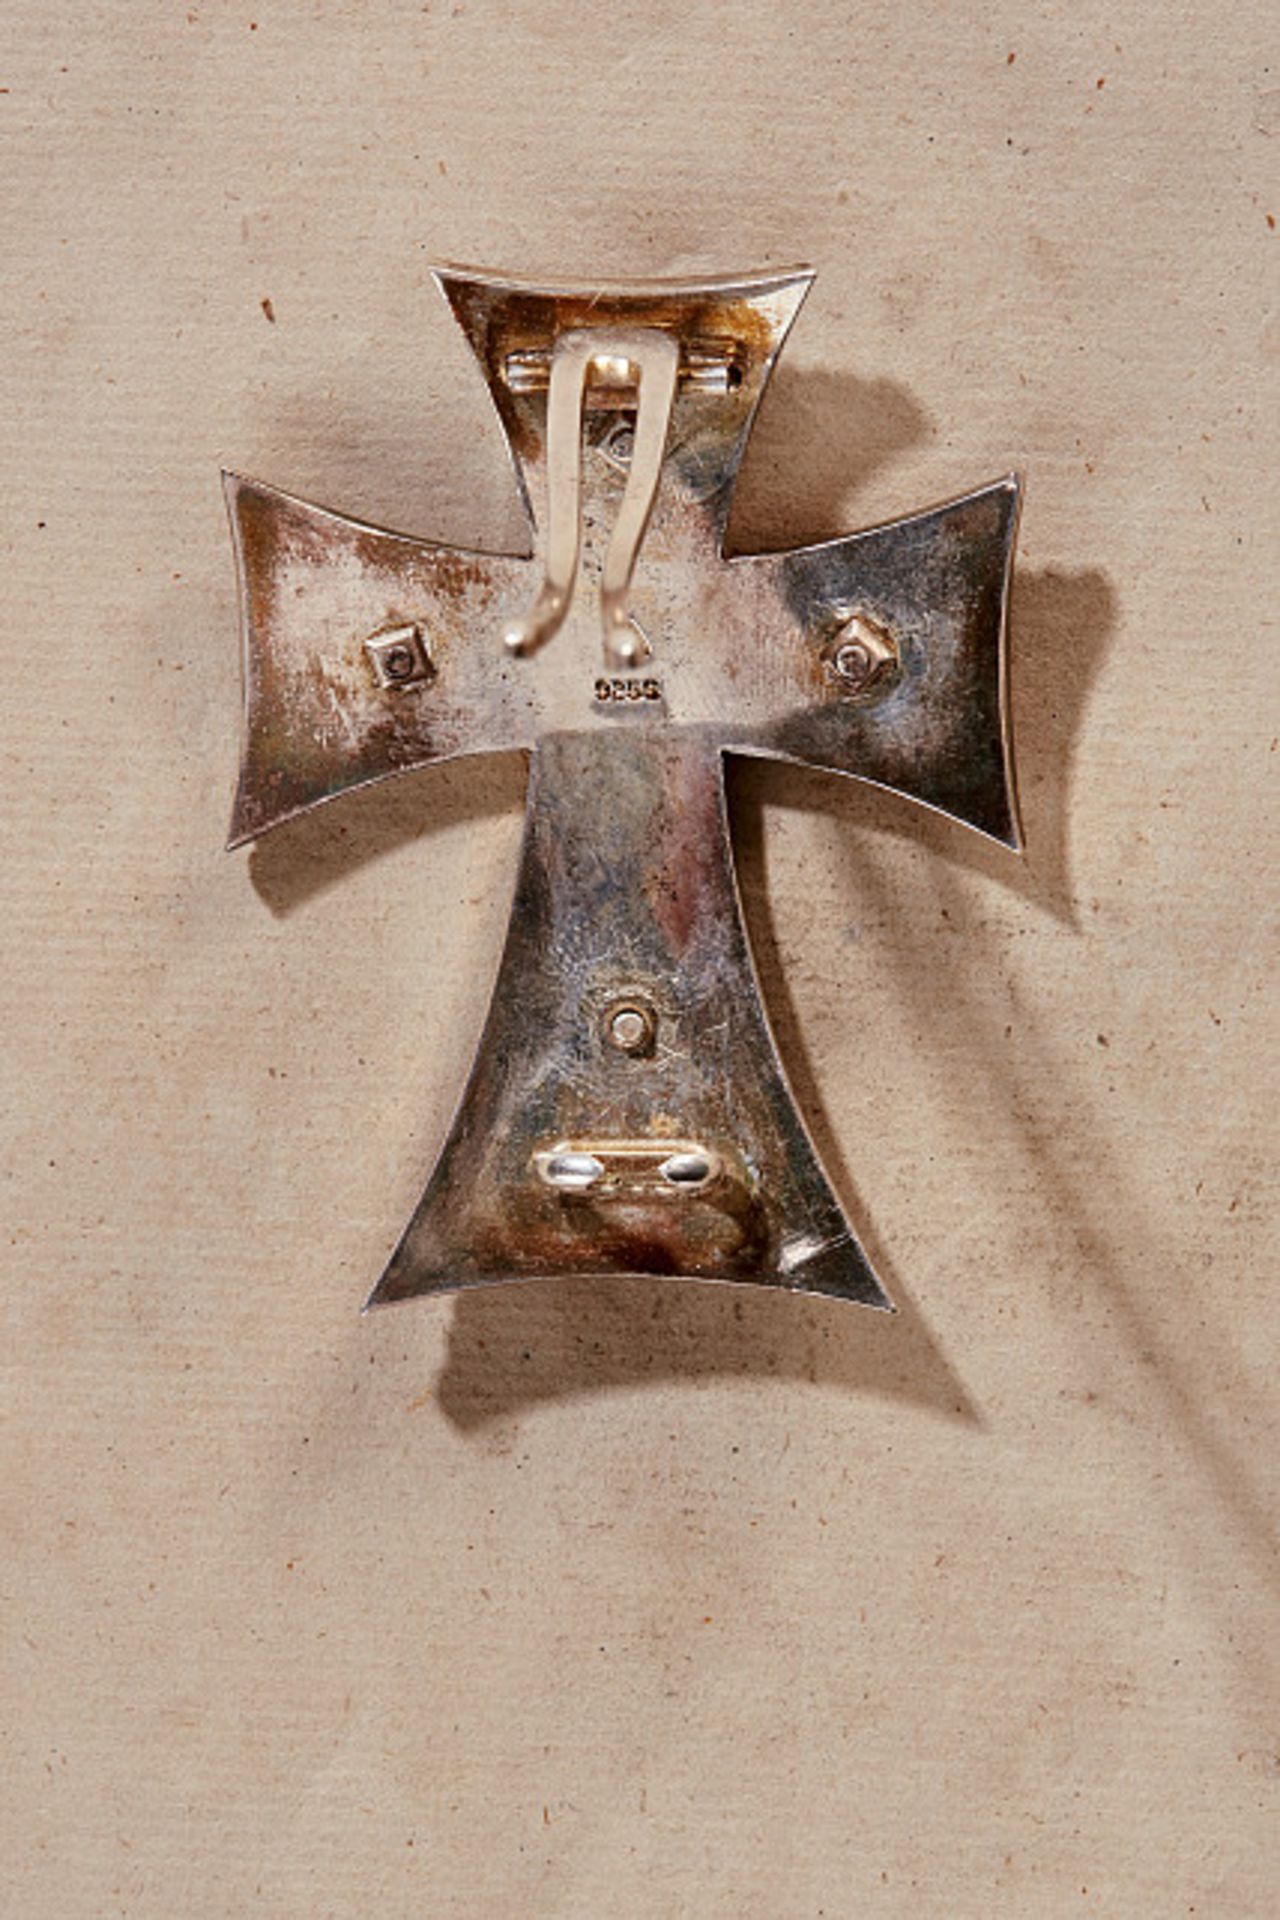 DÄNEMARK - DANEBROG-ORDEN : Bruststern zum Kommandeurkreuz.Silber und emailliert, die aufgelegte - Bild 2 aus 2